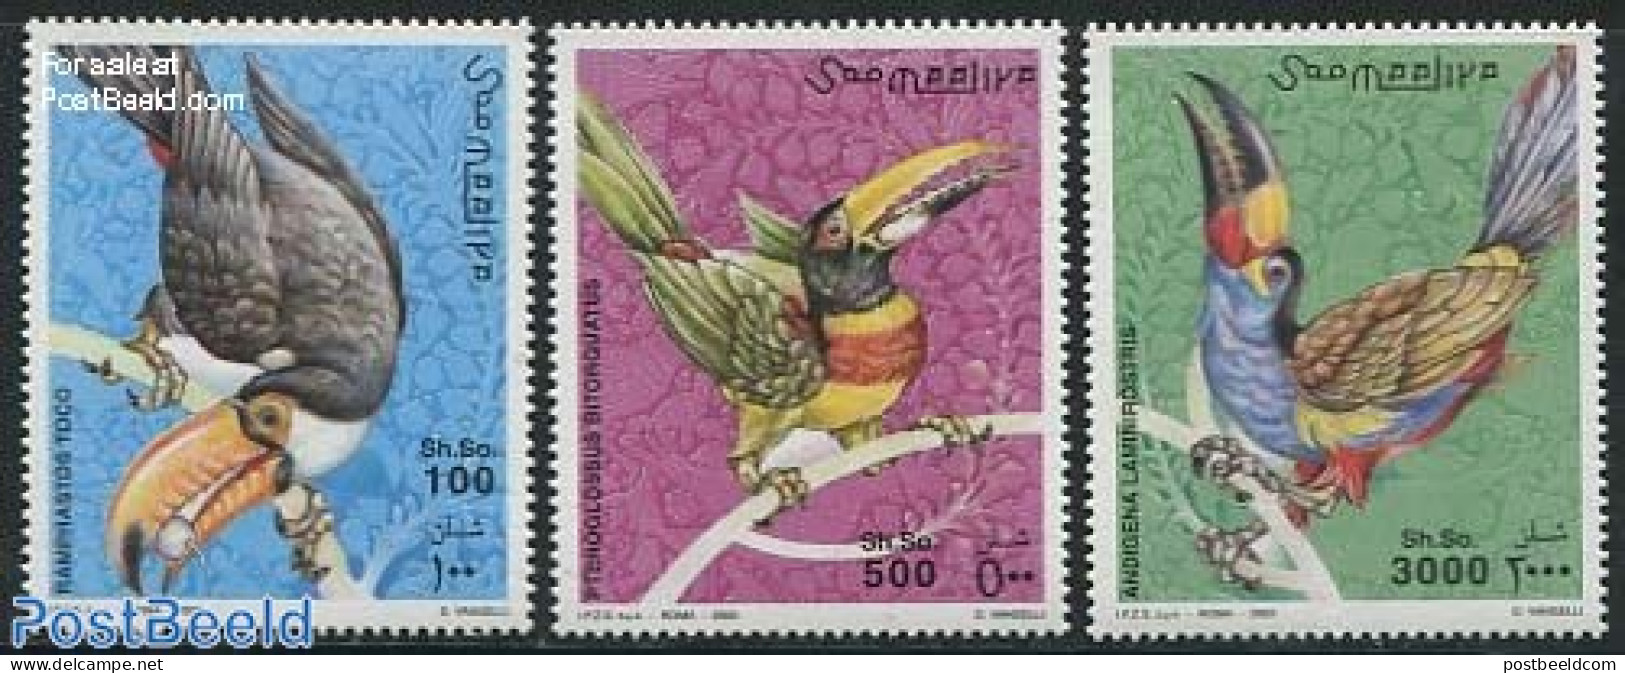 Somalia 2003 Toucans 3v, Mint NH, Nature - Birds - Somalia (1960-...)